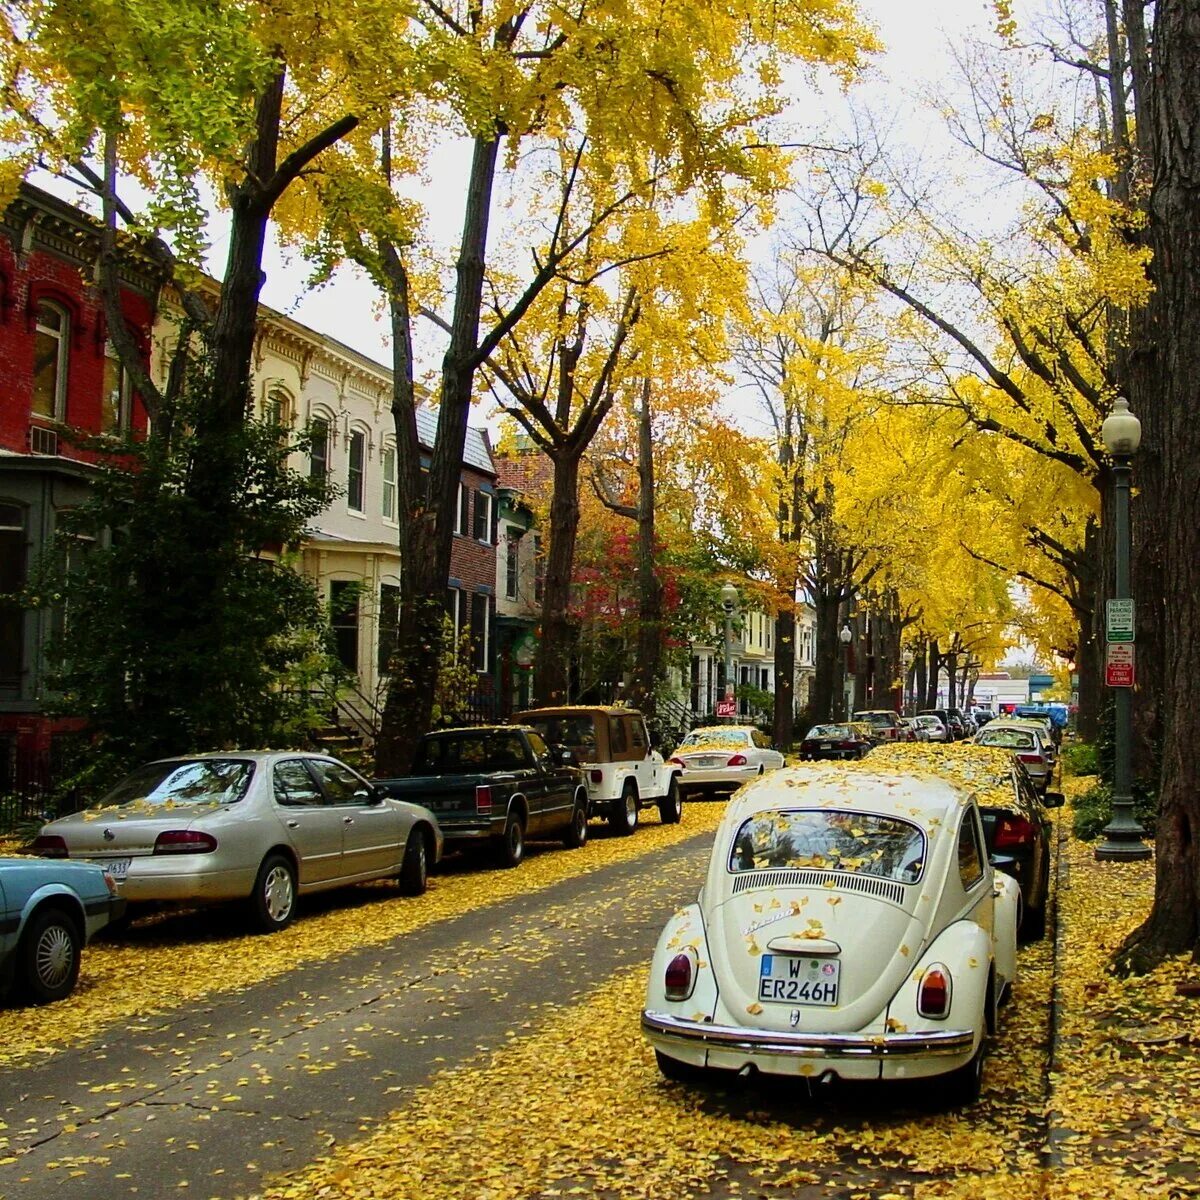 Улица золотистая. Осень в городе. Машина на улице. Машины в городе. Машины на улицах города.